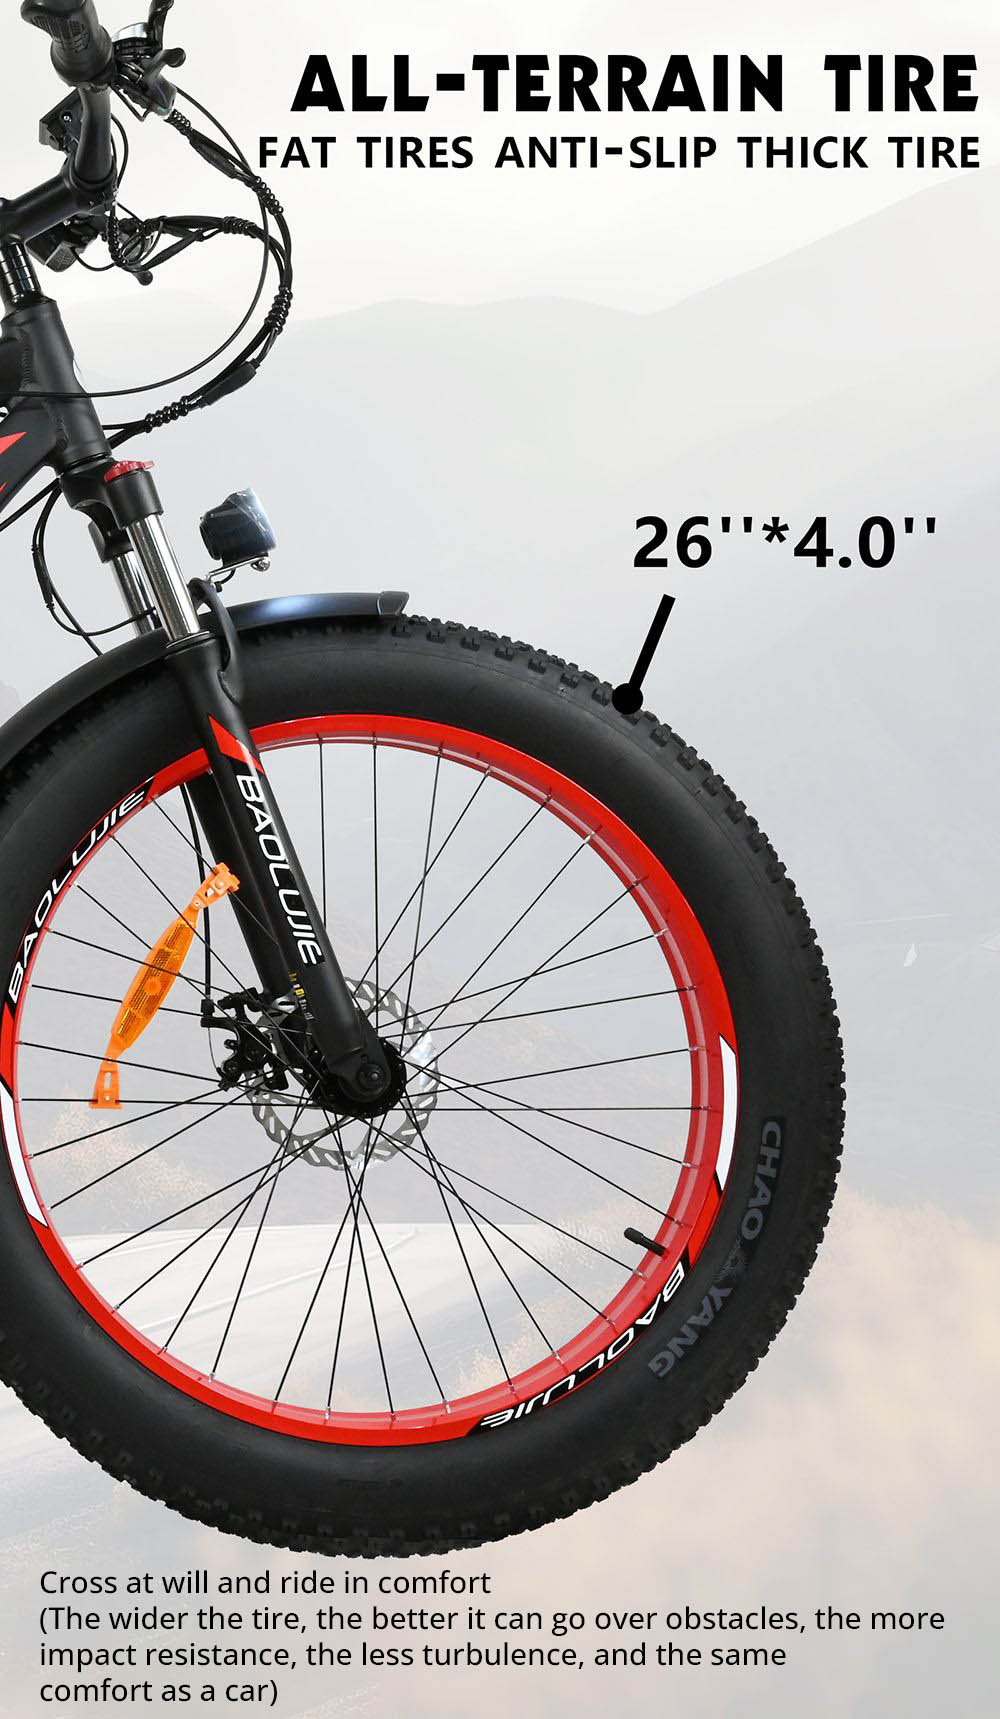 Vélo électrique BAOLUJIE DP2619, gros pneu 26 * 4.0 pouces, moteur 750 W, batterie 48 V 13 Ah, vitesse maximale 45 km/h, portée maximale 45 km, écran LCD SHIMANO à 7 vitesses - Noir